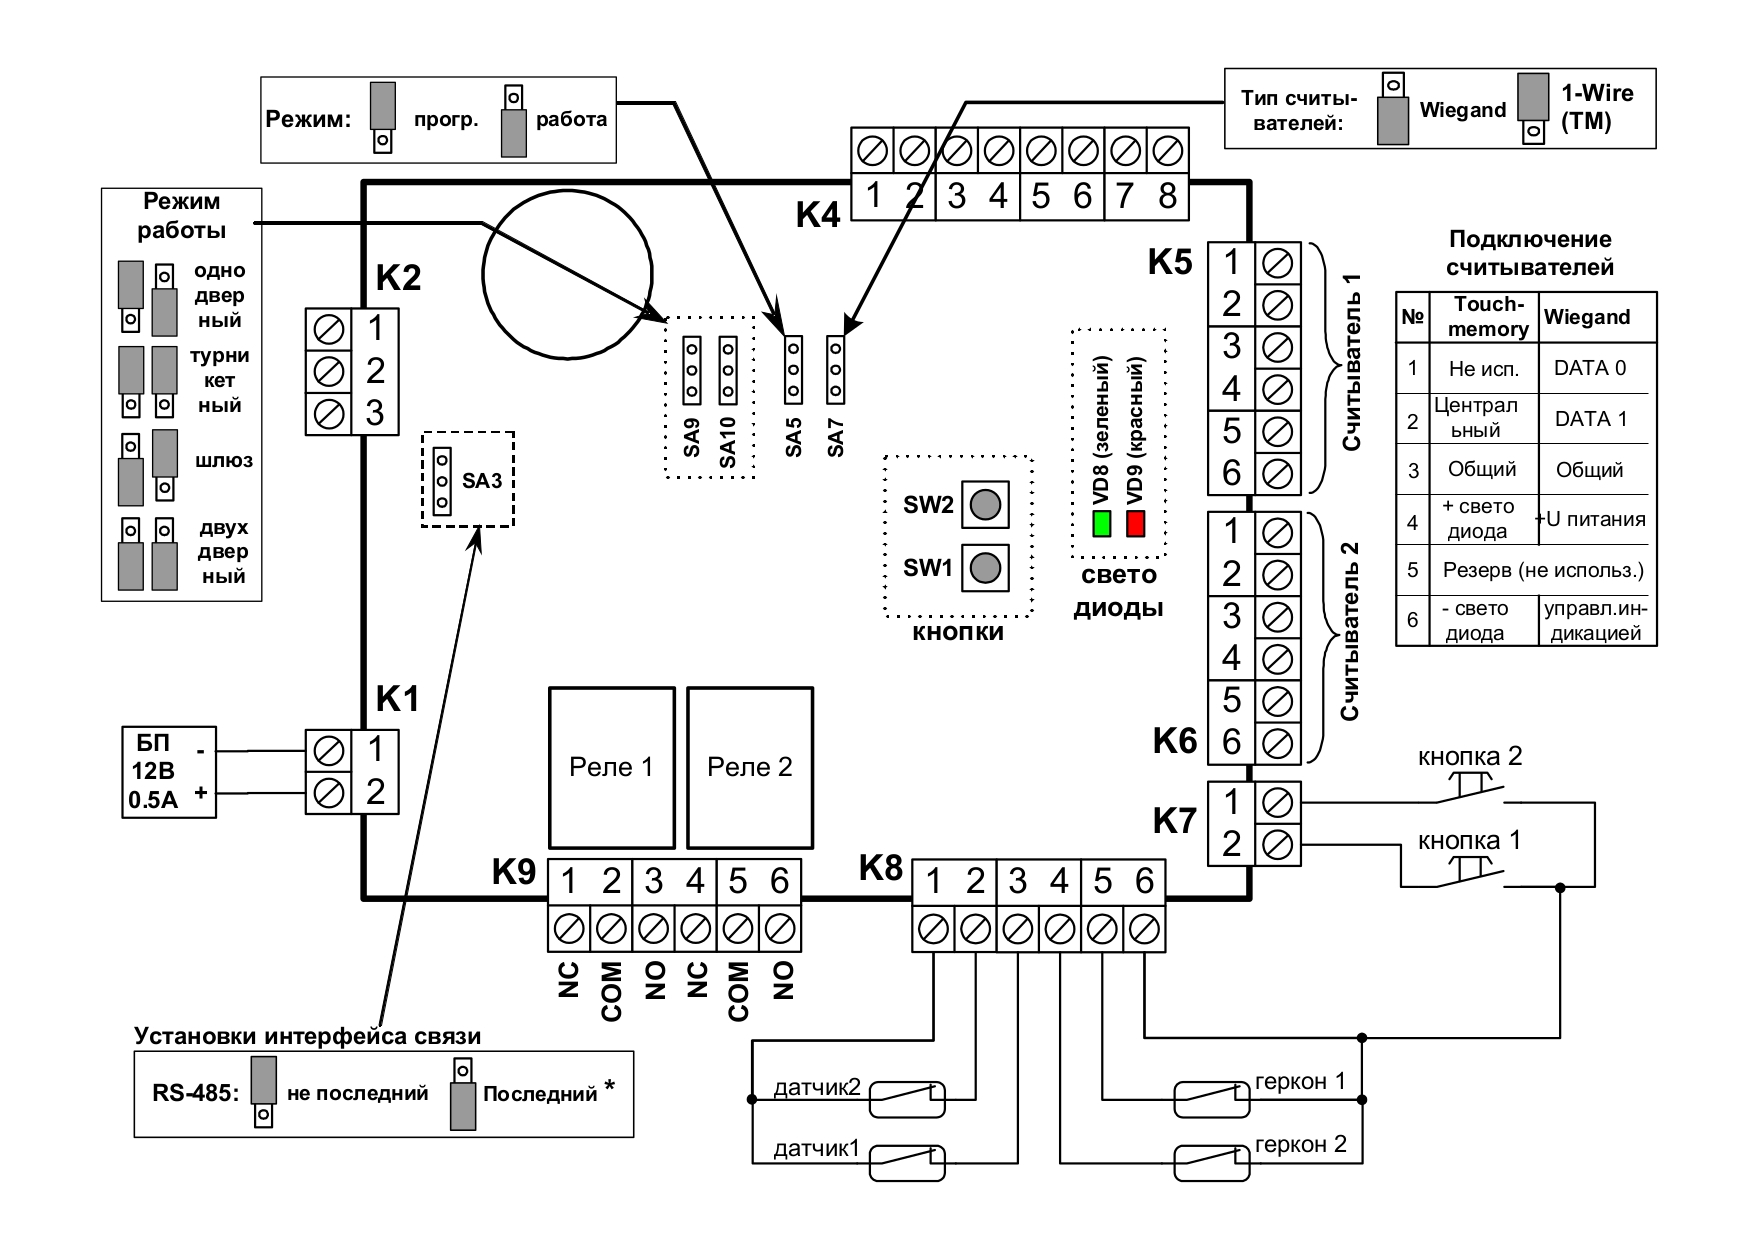 Универсальный контроллер, память на 16 тыс.ключей, 8 тыс.событий и 7 расписаний. RS-485. 2 входа считывателей с протоколами Wiegand 26 или 48-автомат (опционально: 1-Wire (TM), ABA-2), 4 тревожных входа. 2 реле (30В DC/6A), в корпусе с блоком бесперебойного питания